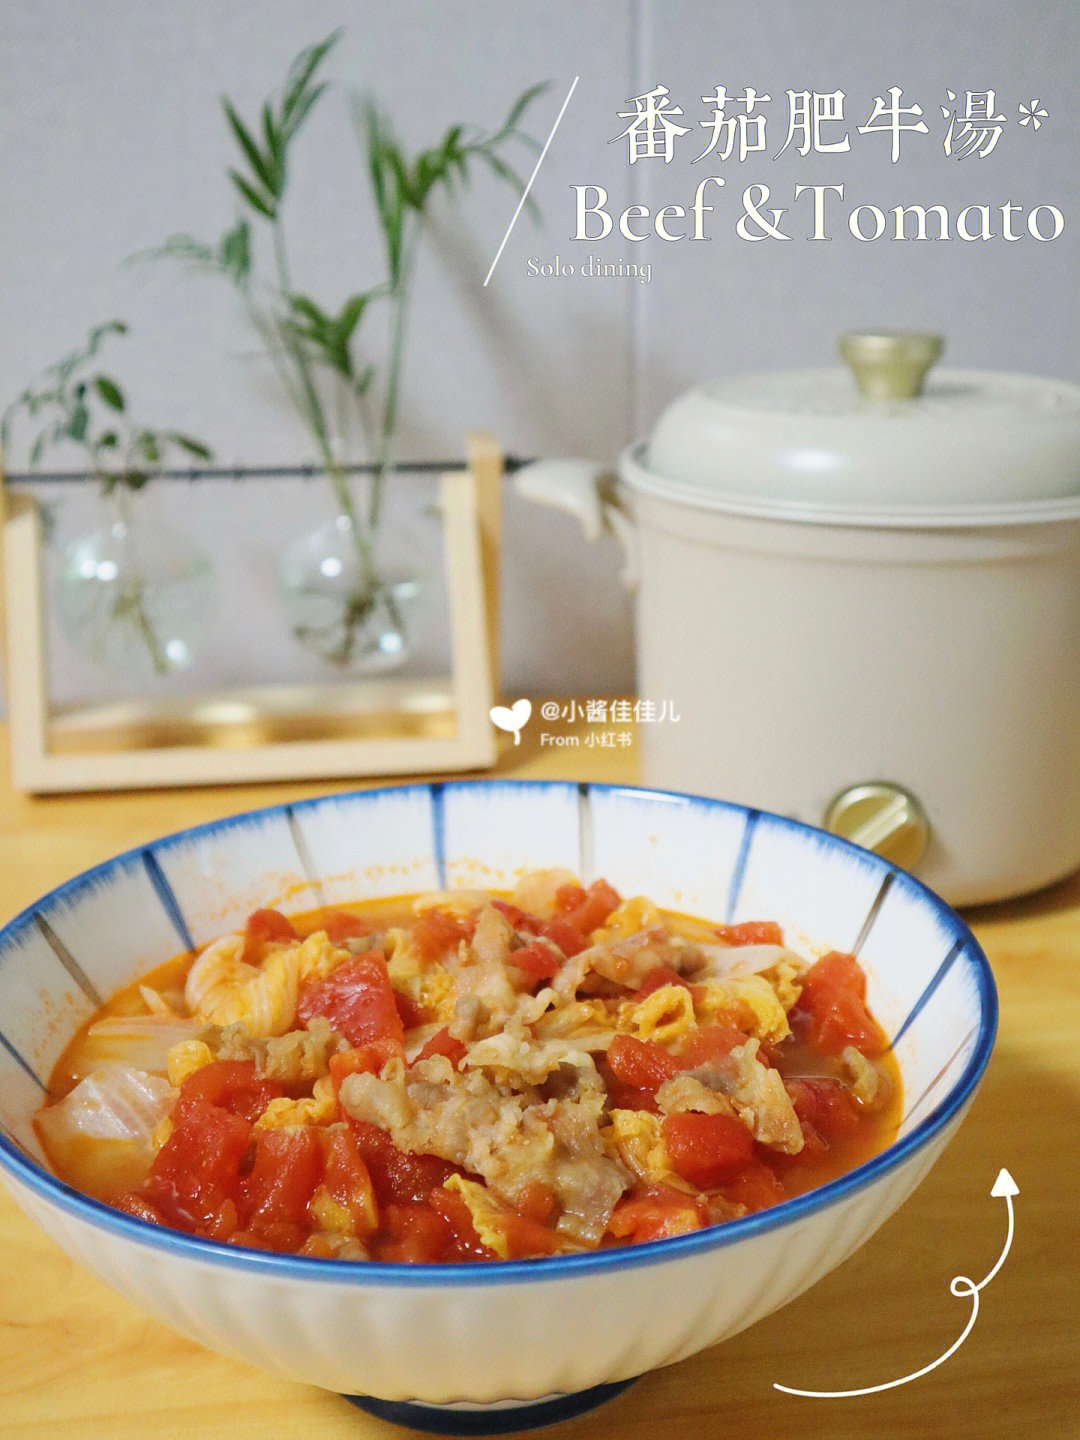 酸酸甜甜的番茄肥牛,低脂好吃,简单快手～用到的锅具是bruno小嗨锅